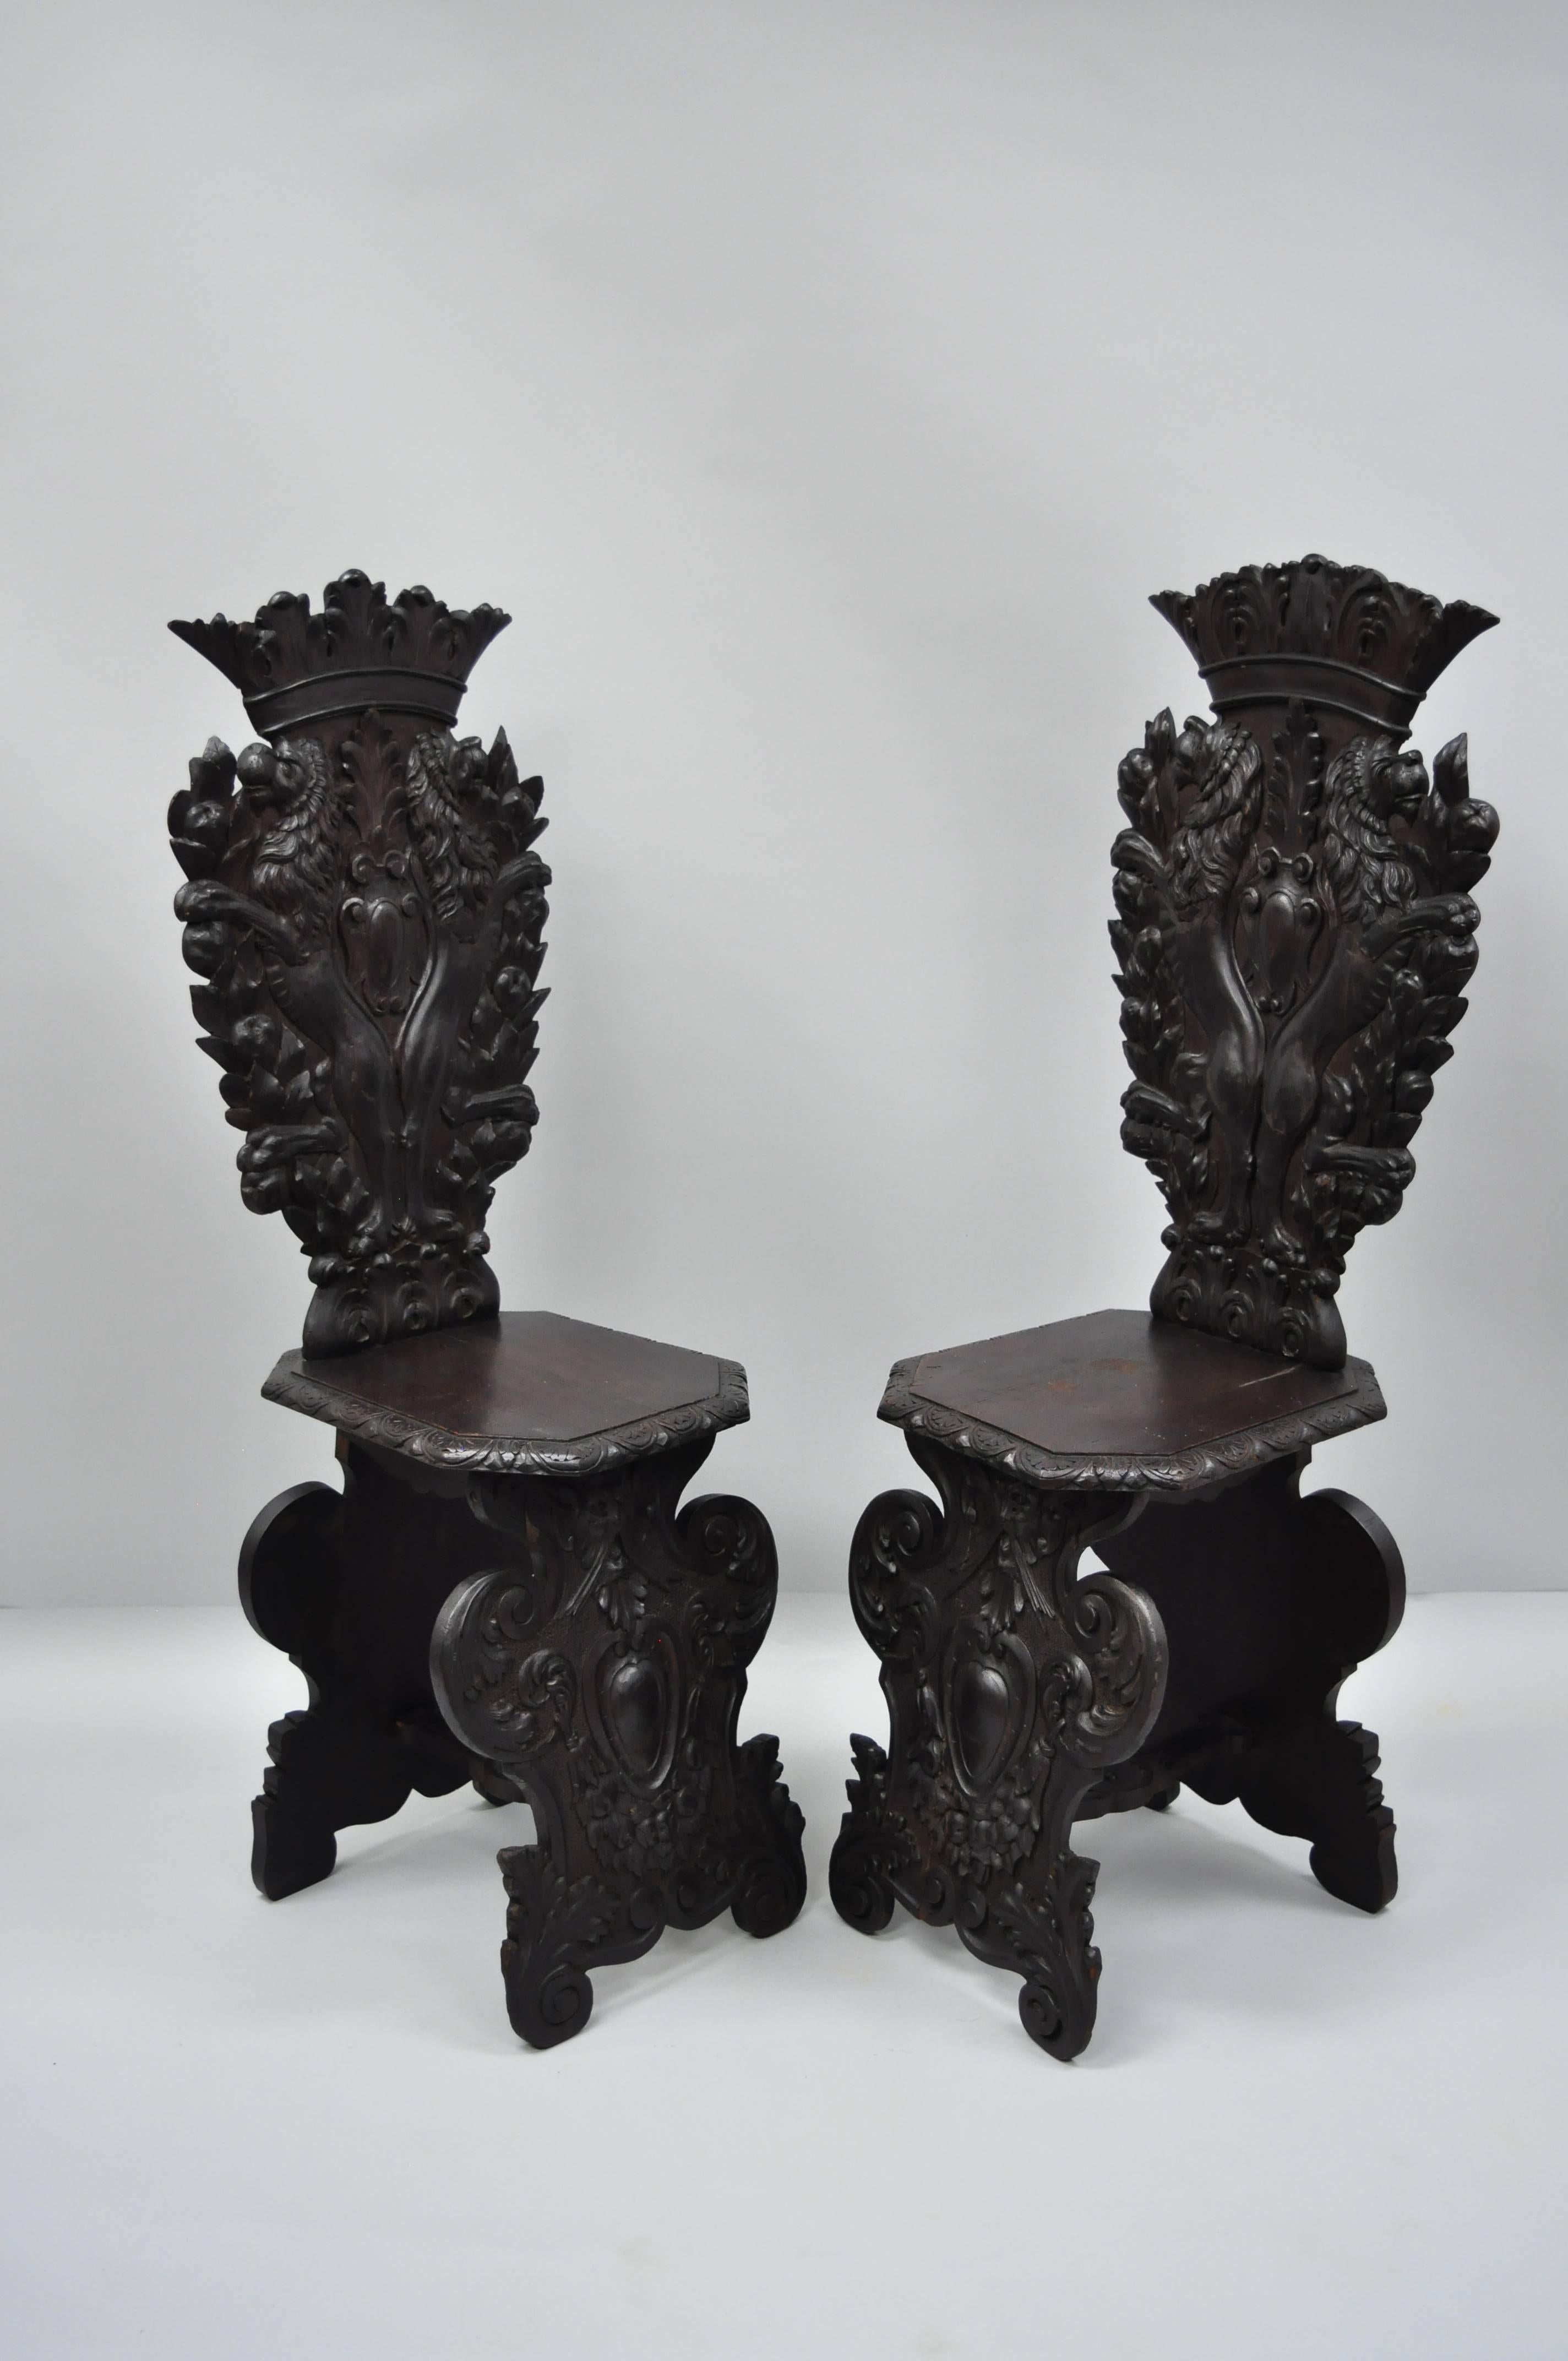 Paire de chaises de salle Sgabello en noyer sculpté au lion, de style Renaissance italienne du XVIIIe siècle. L'objet est fabriqué en bois massif et présente des détails finement sculptés de lions, de couronnes royales et de rinceaux d'acanthe